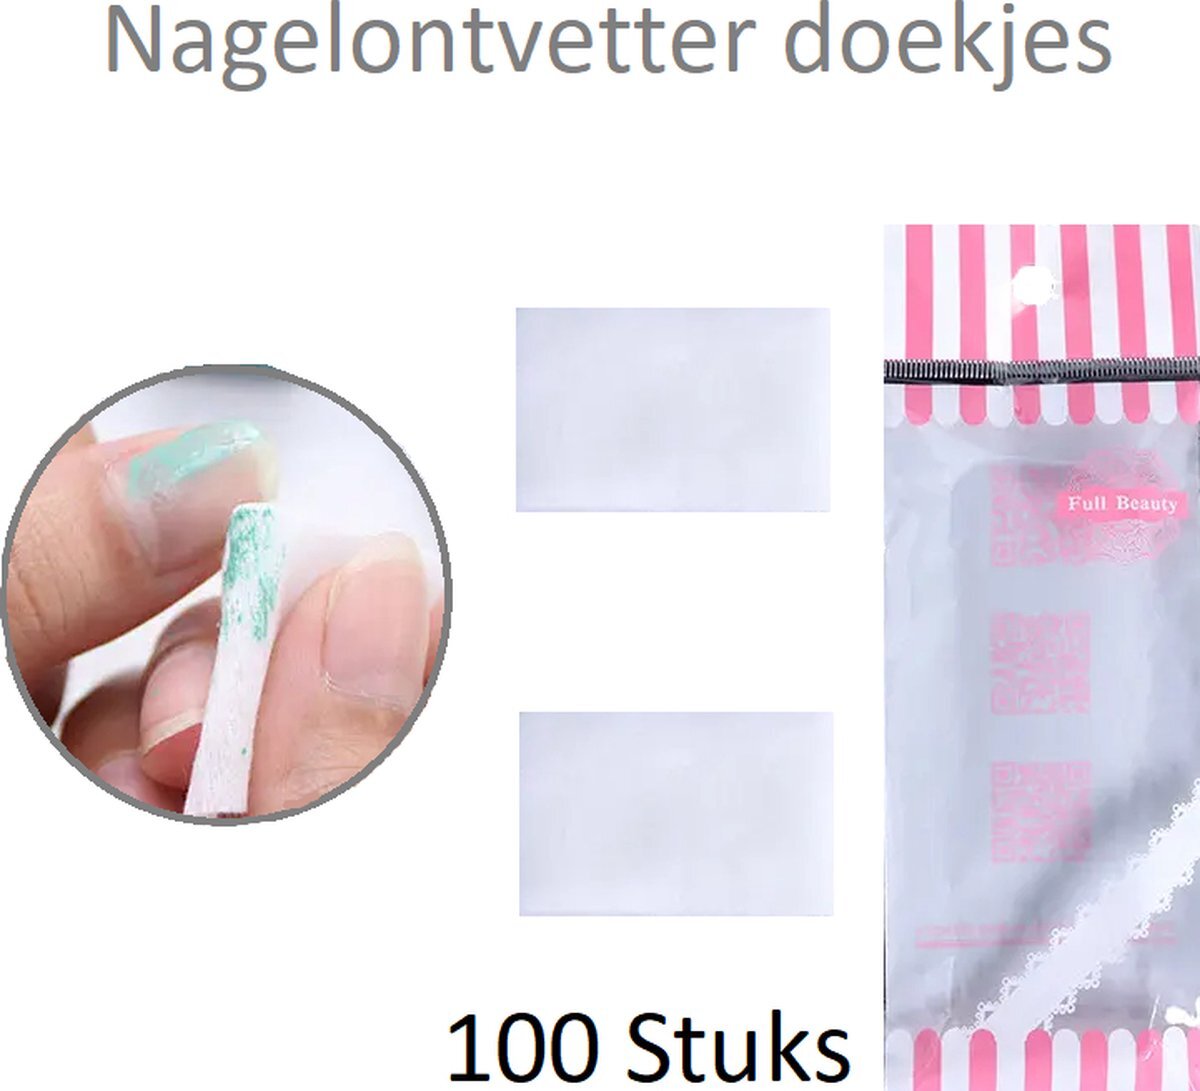 Daily Accessoires Nagel ontvetter - nail cleaner - nagel primer - nagel cleaner - celstof doekjes - nagel doekjes - nail wipes - 100 stuks